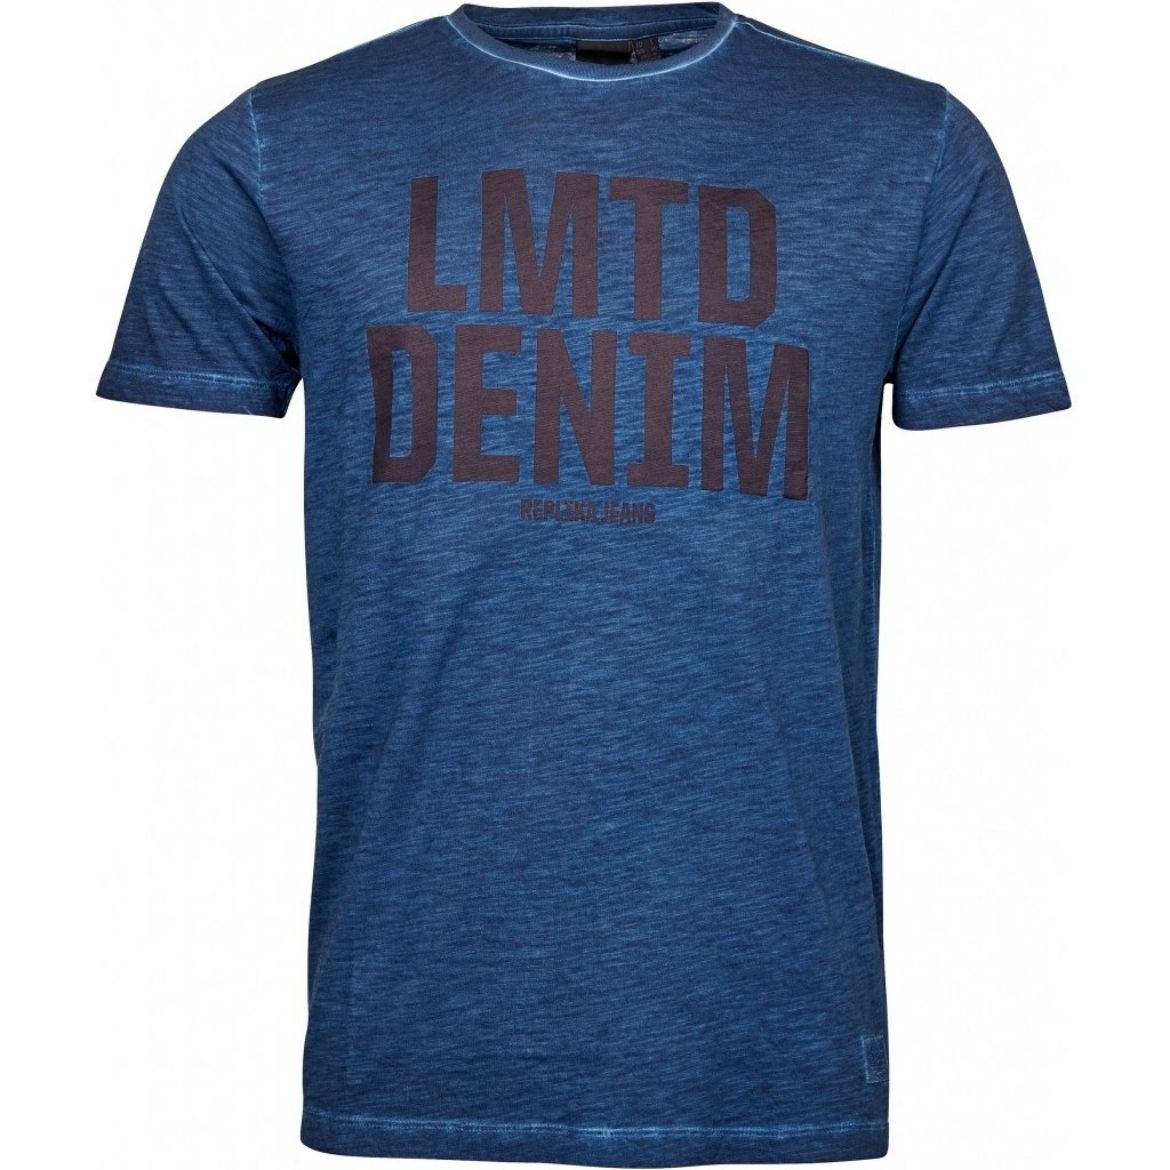 Bild von T-Shirt mit Aufdruck LMTD DENIM